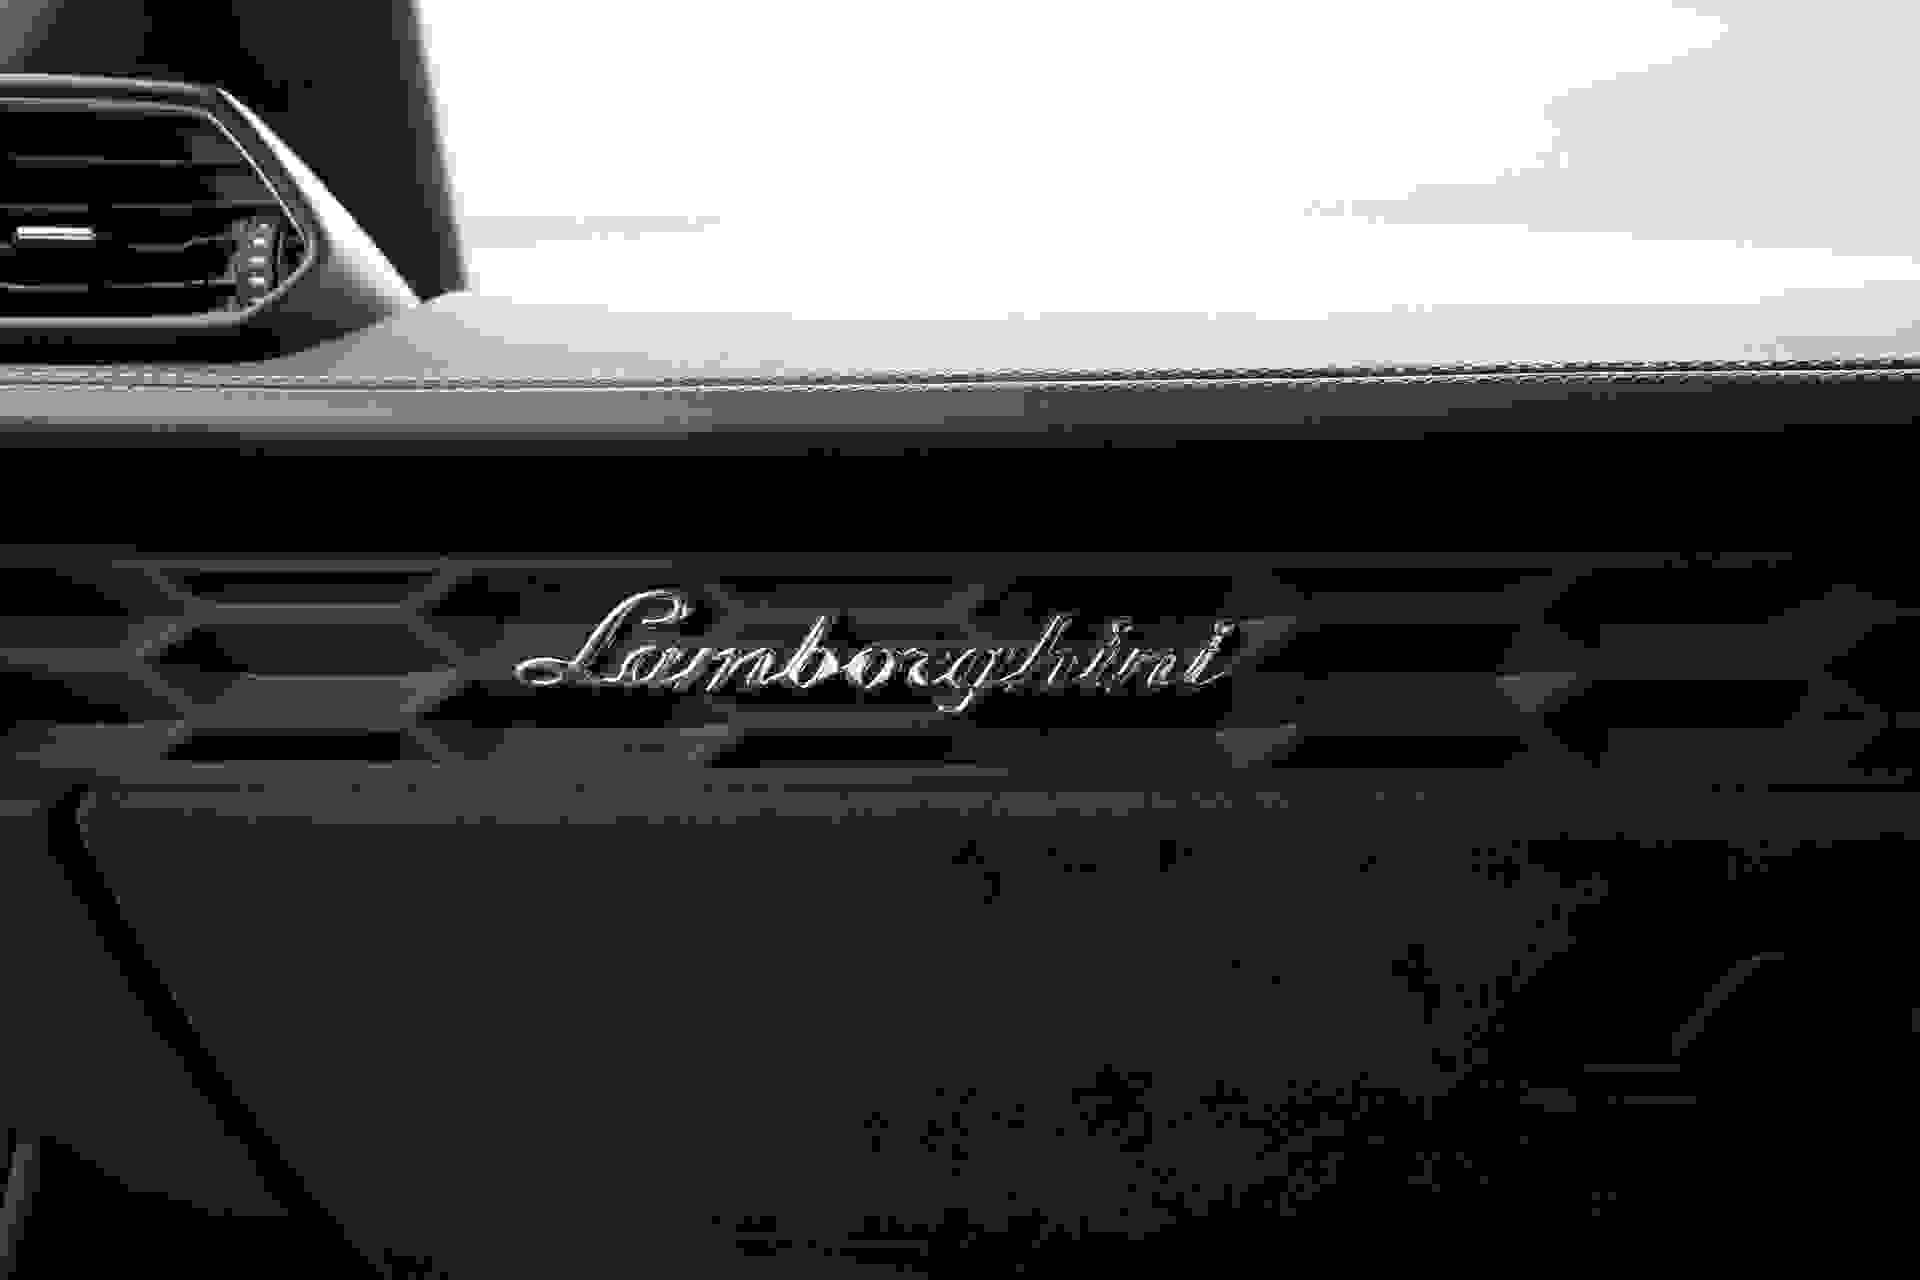 Lamborghini HURACAN Photo 32121443-8004-4660-abe8-5e1bc8a1f828.jpg